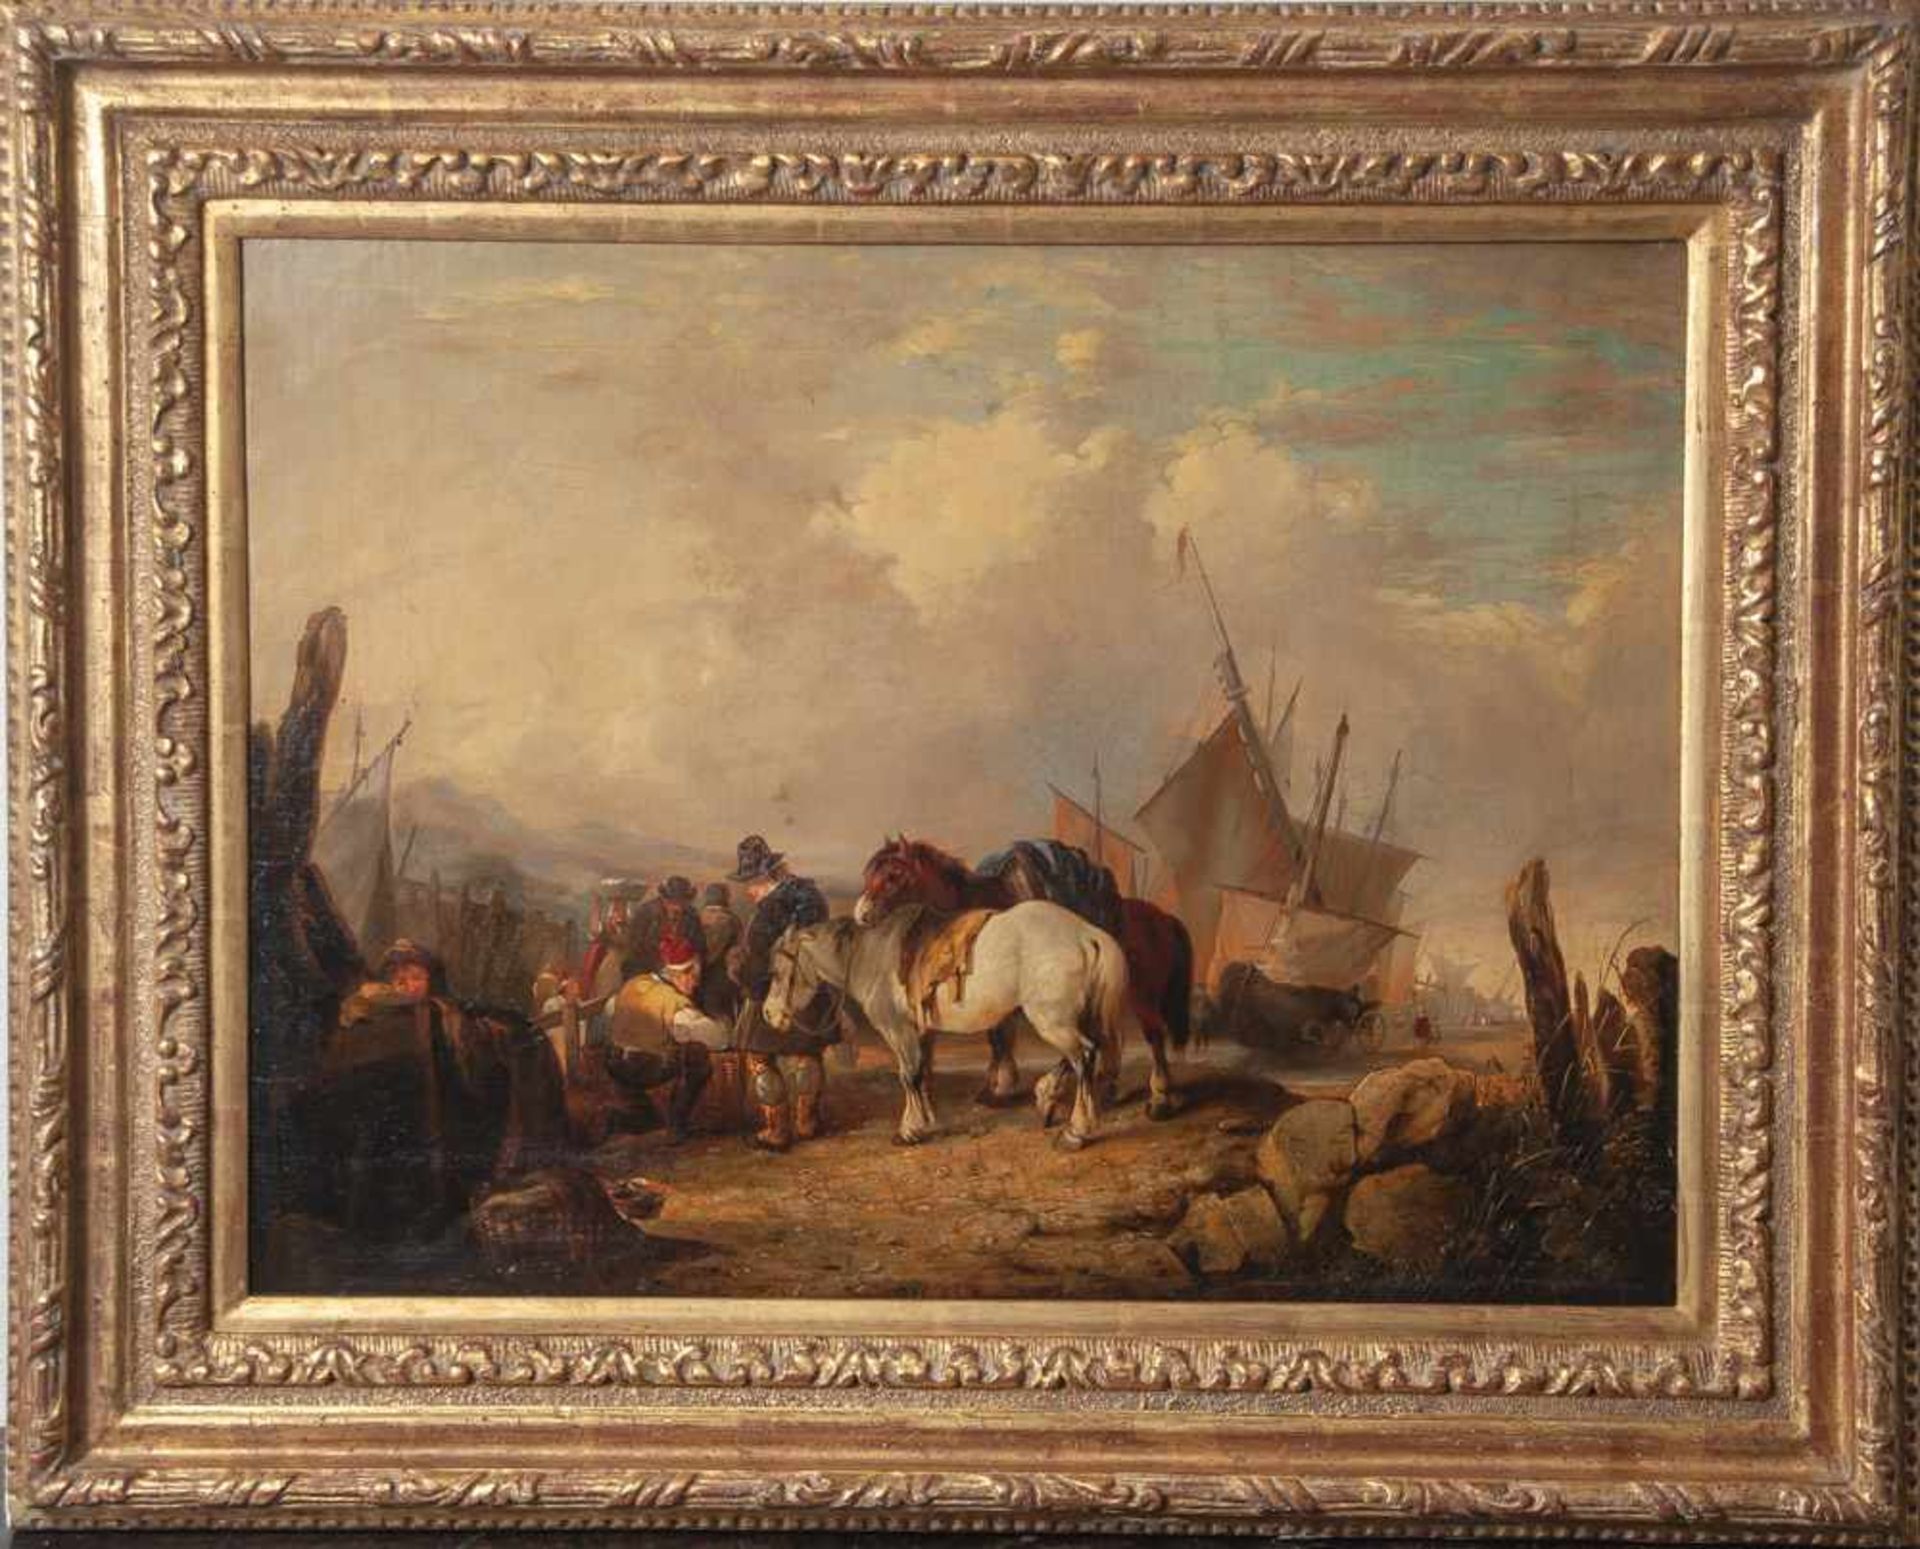 Shayer, William I (1788-1879), Niederländische Küstenszene mit markttreibendem Fischervolk, Öl/